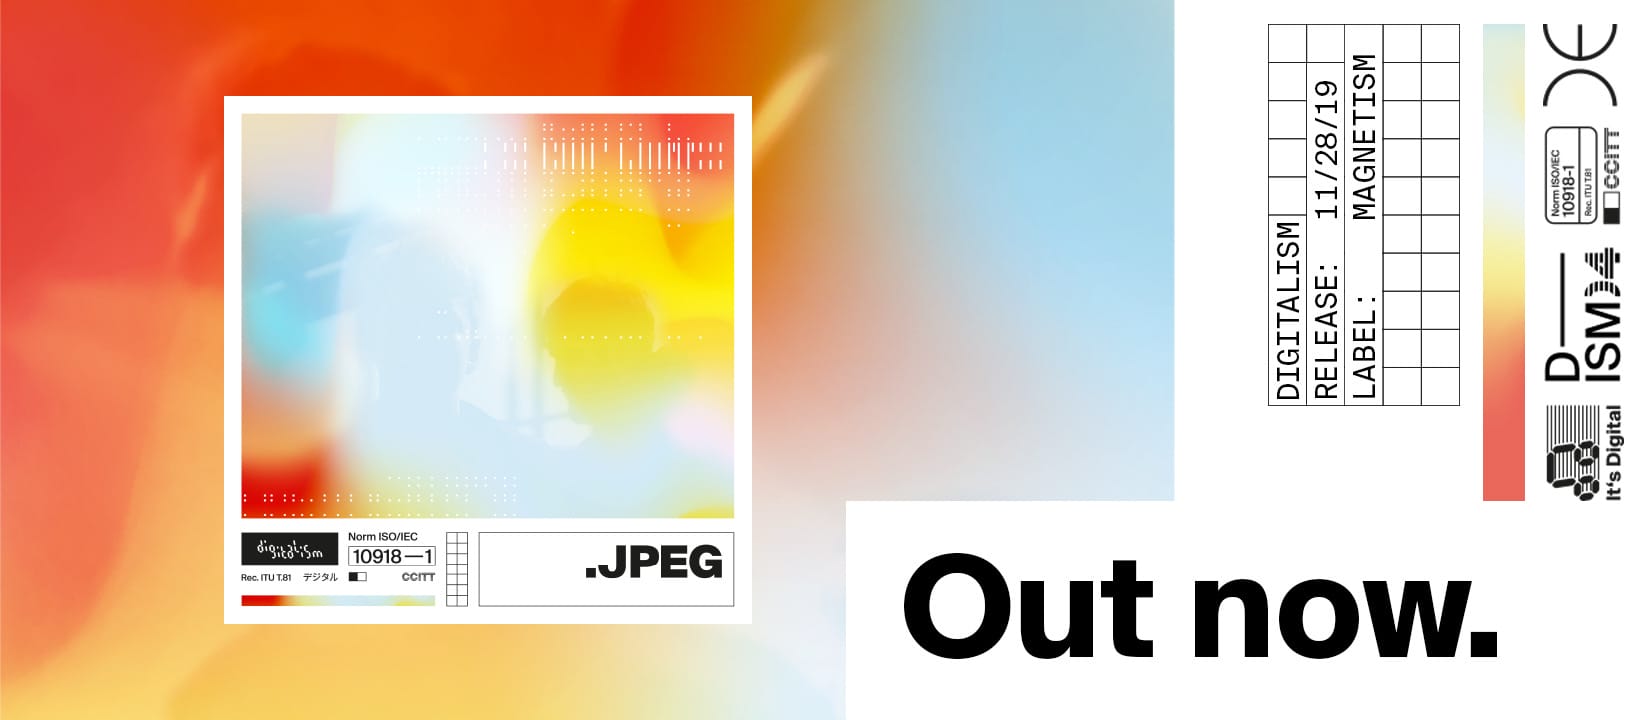 Après mirage en 2016 Digitalism revient avec un nouvel album : Jpeg 1